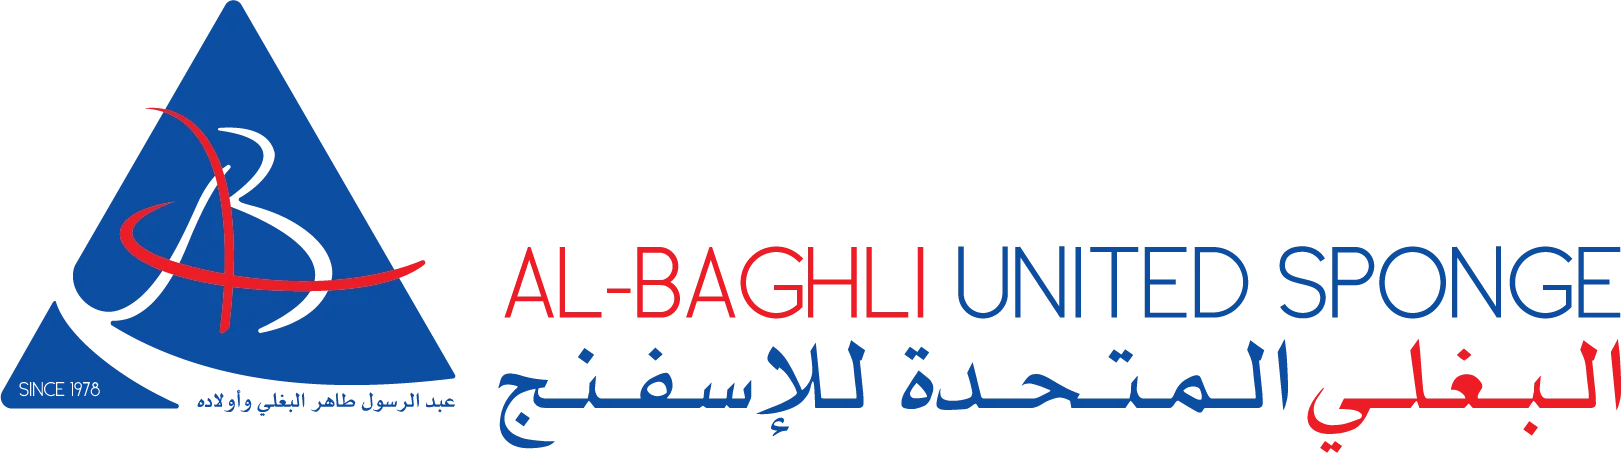 AlBaghli United